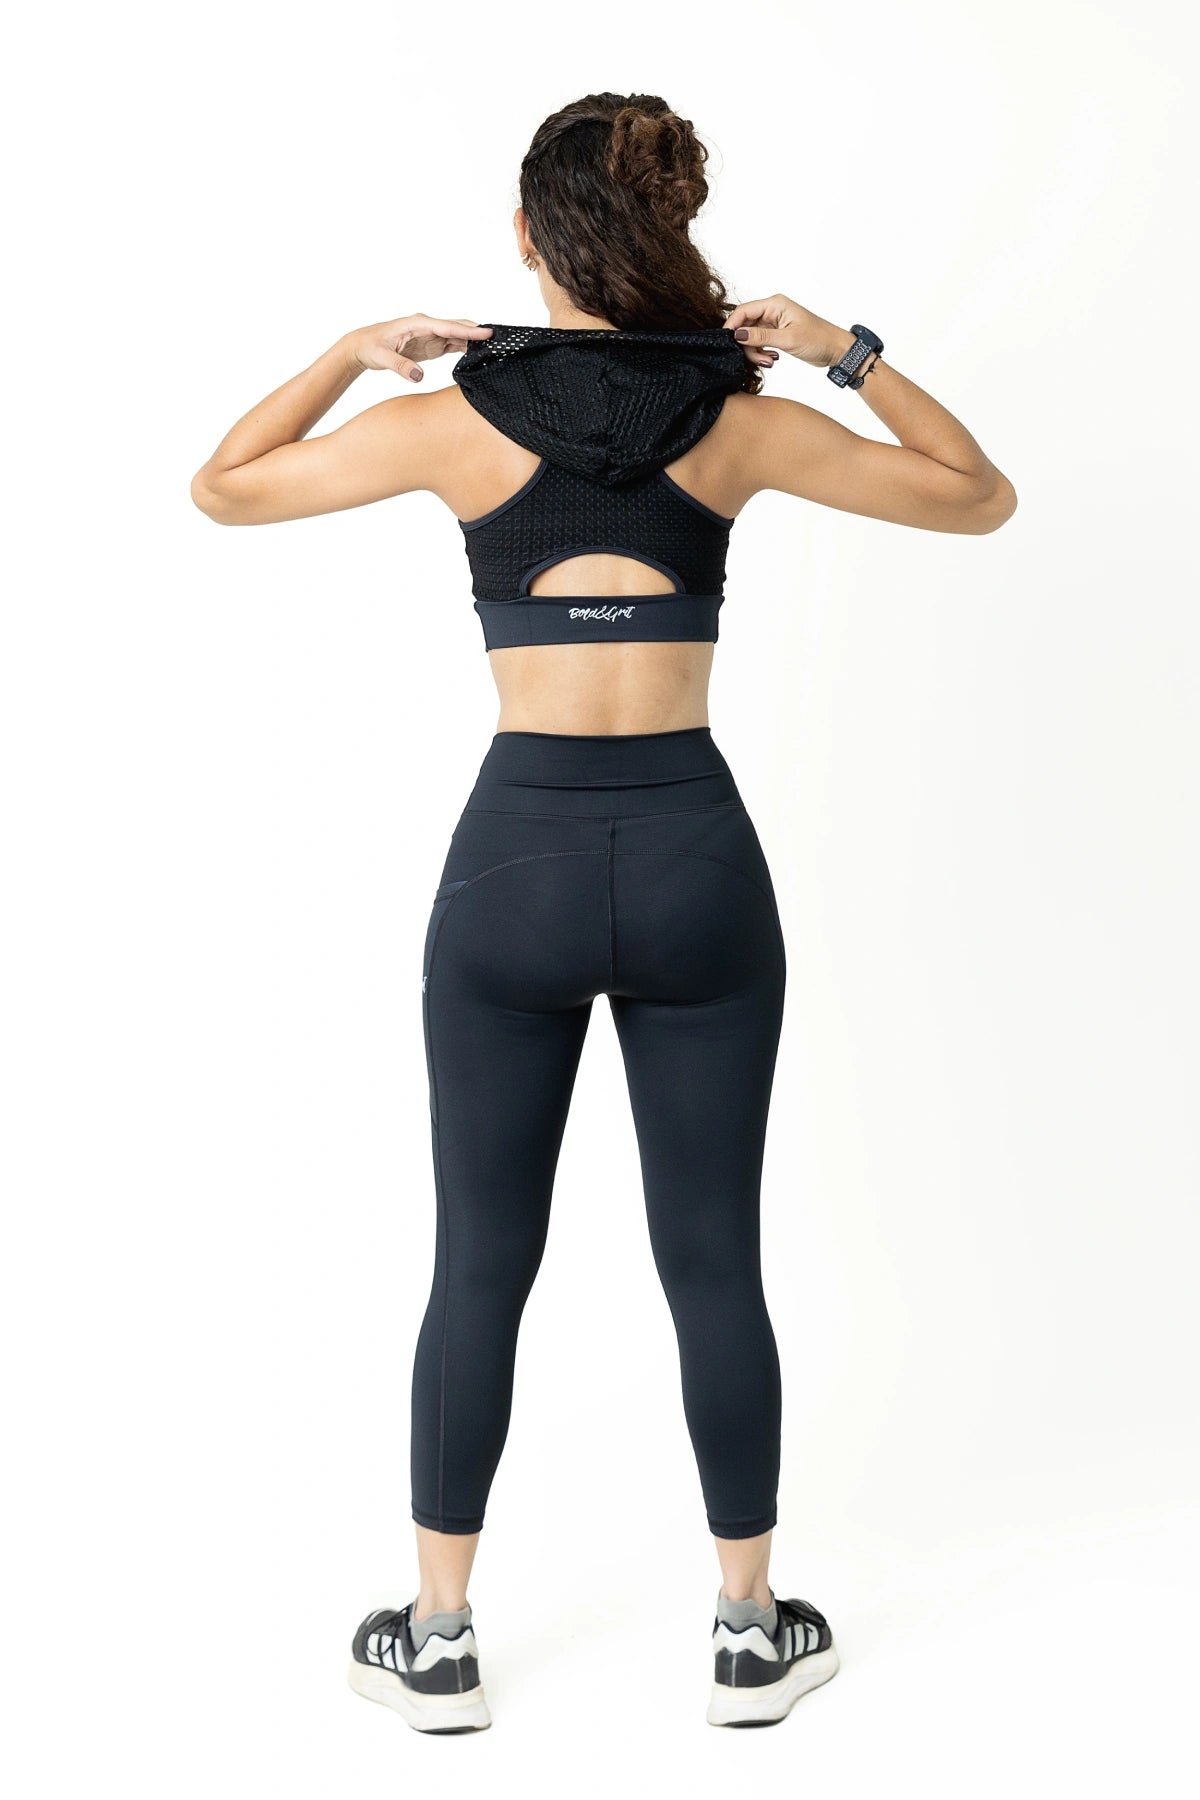 Affordable Wholesale nylon trouser sport For Trendsetting Looks 